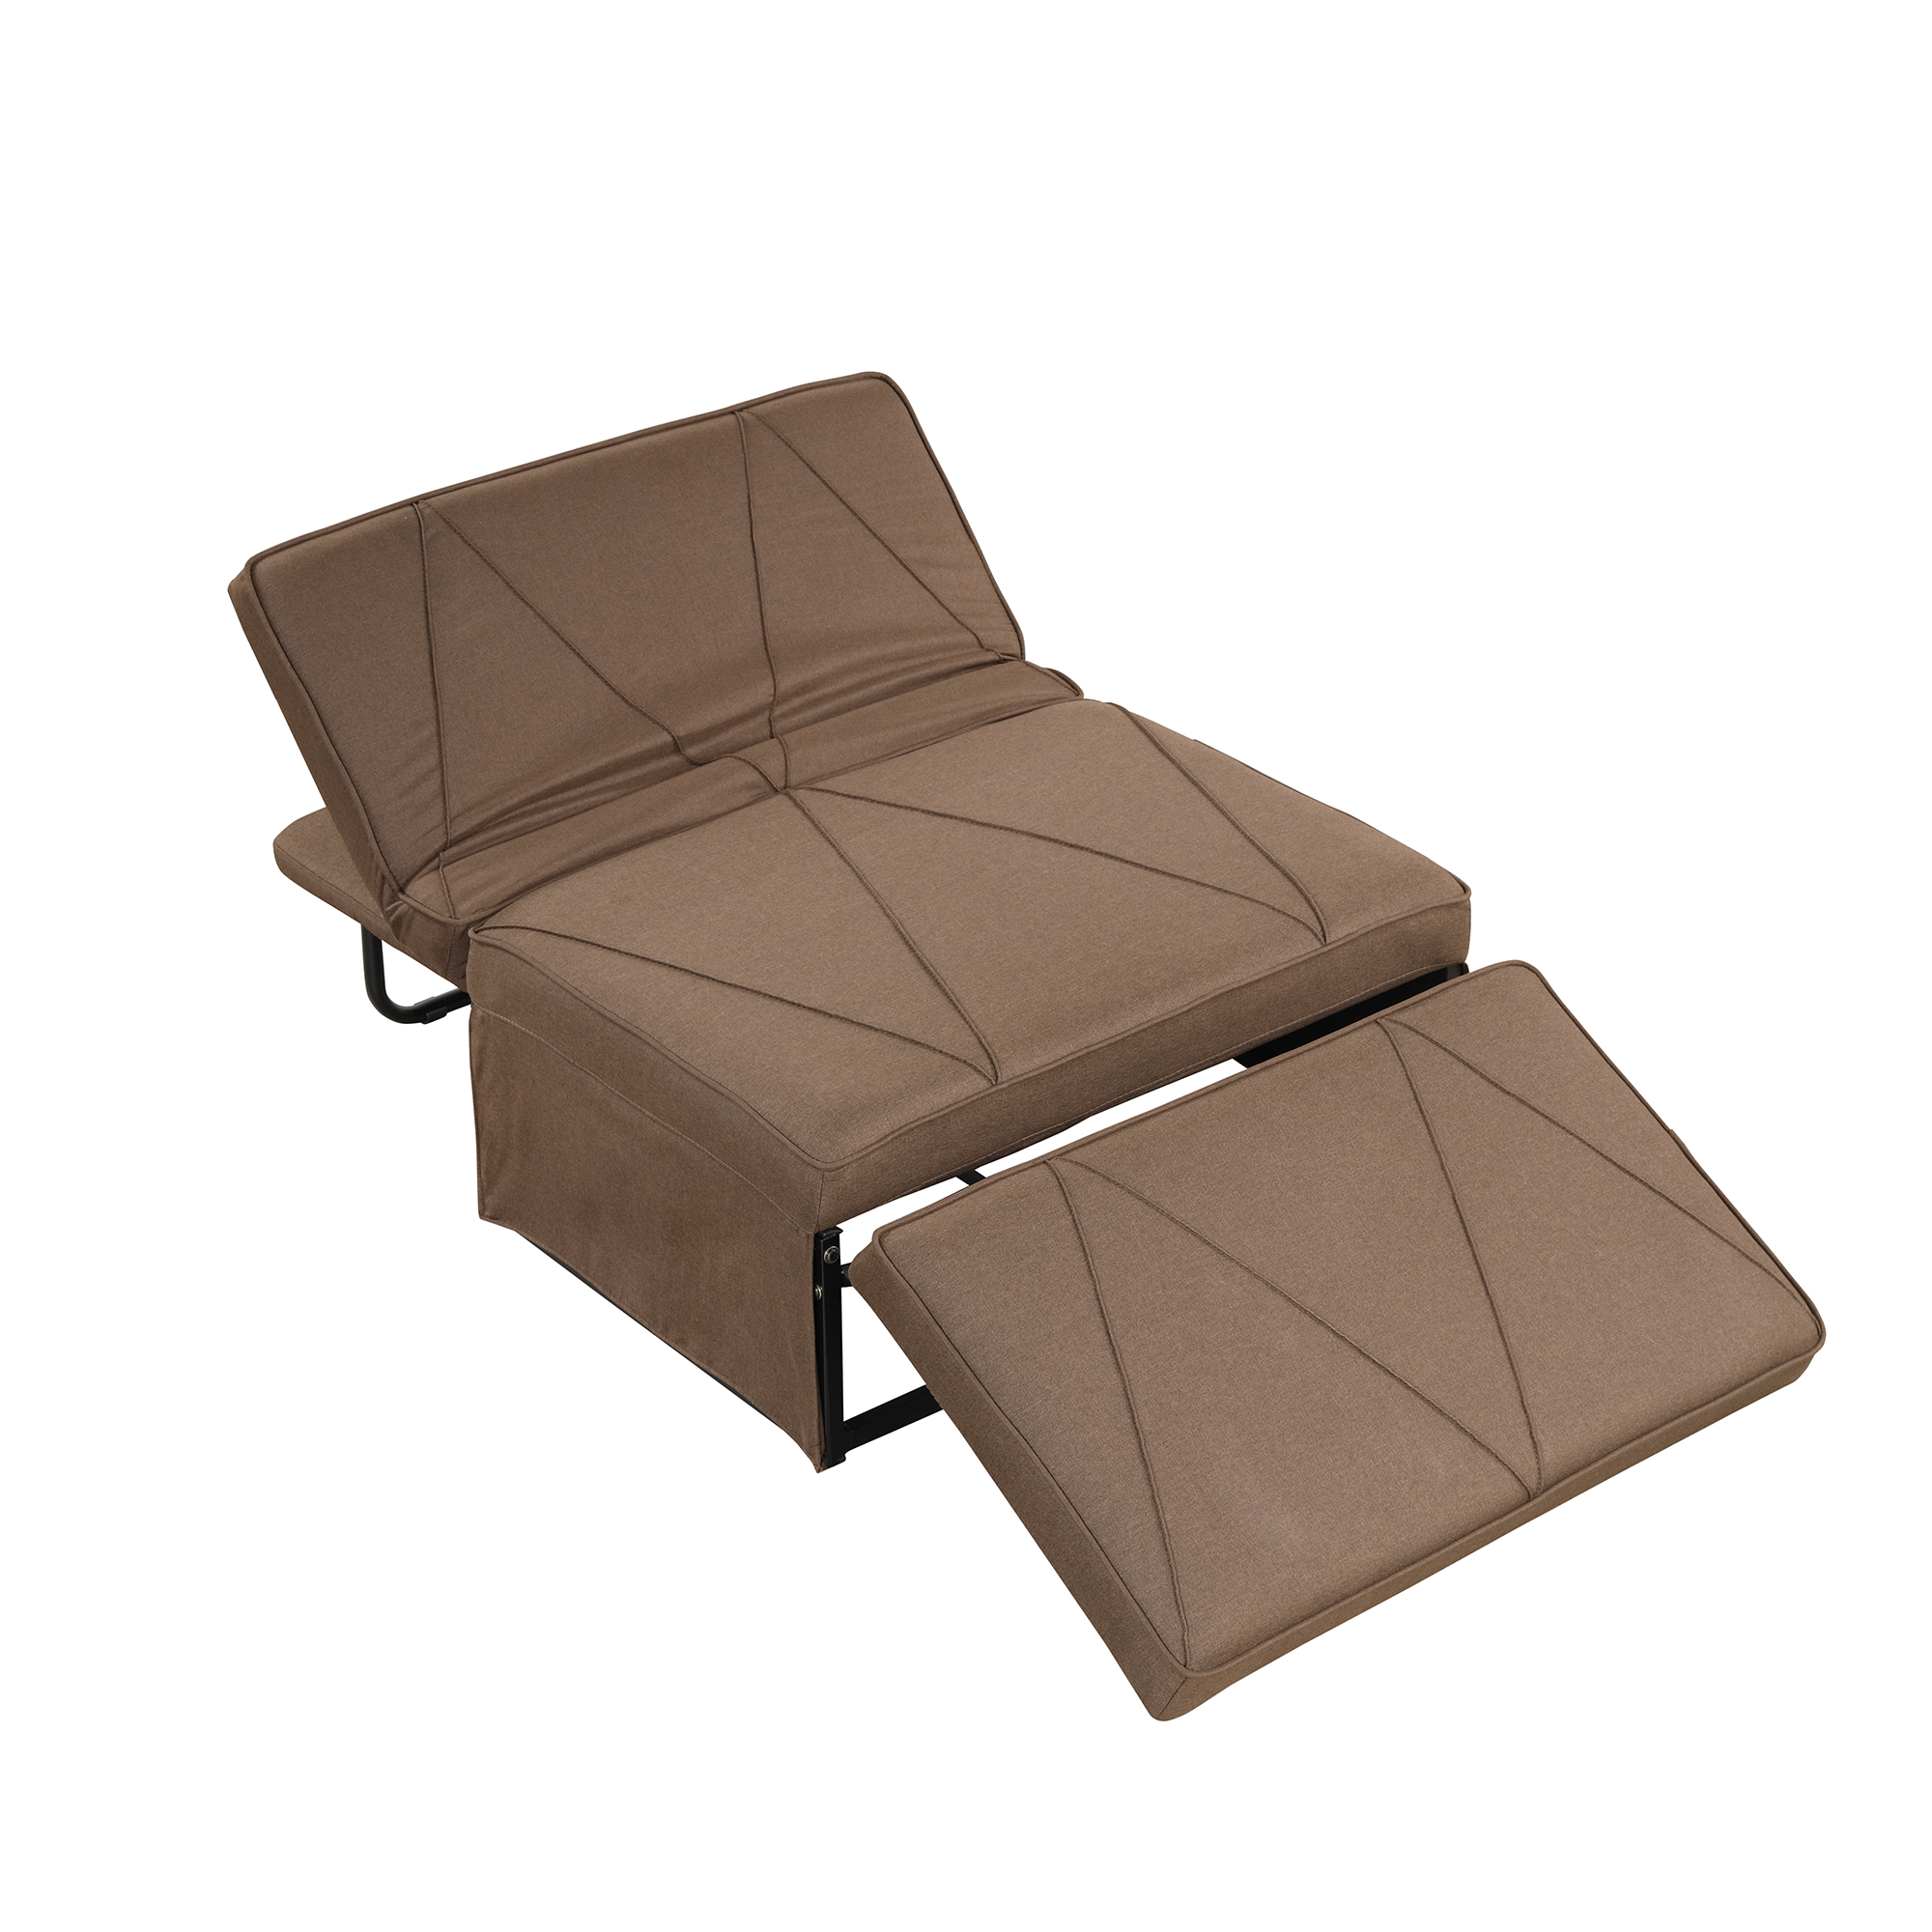 4-in-1 Folding Ottoman Sofa Bed - WF289528AAD